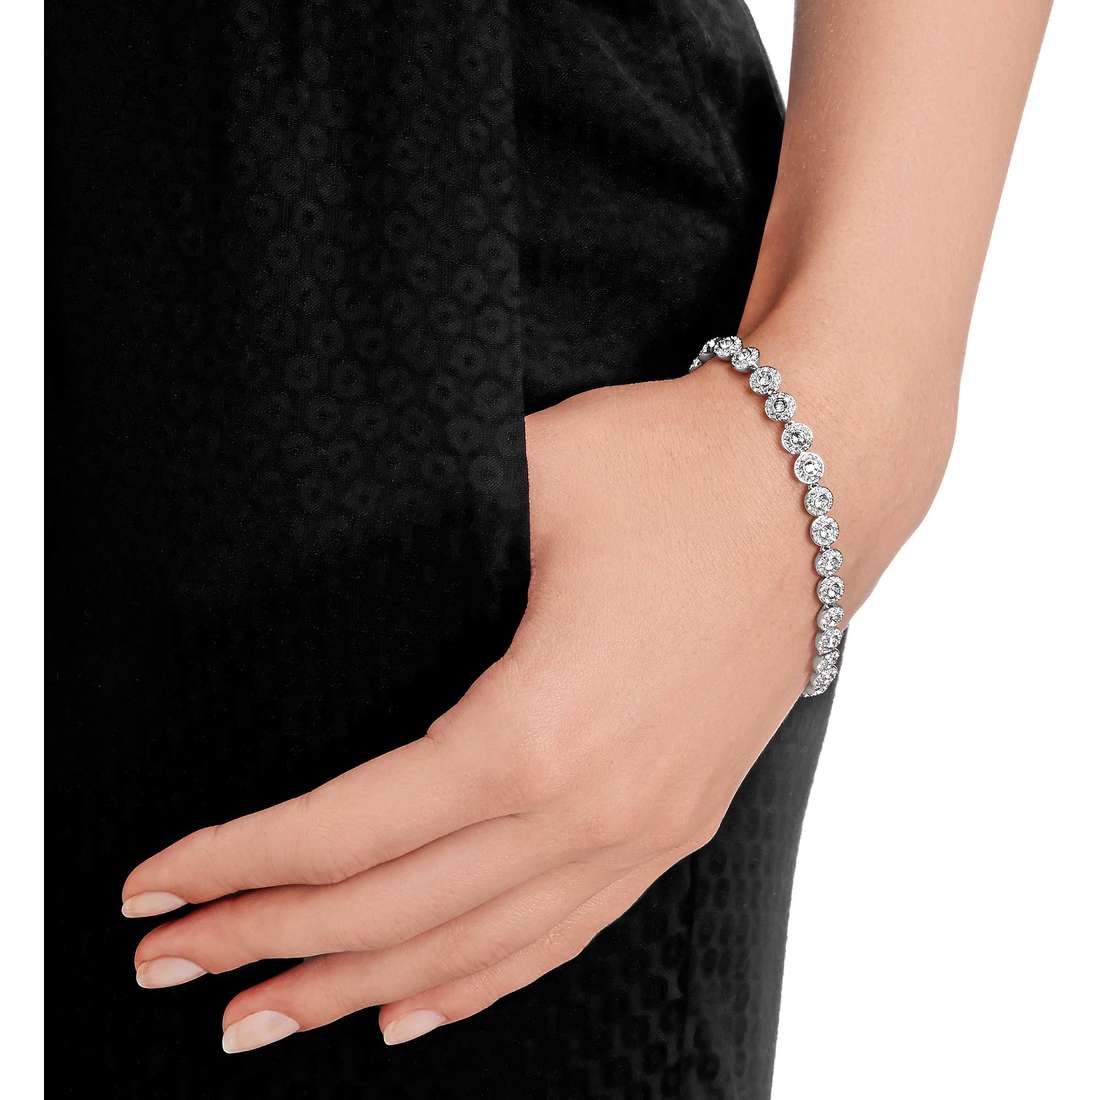 Swarovski bracelets Angelic woman 5071173 wearing